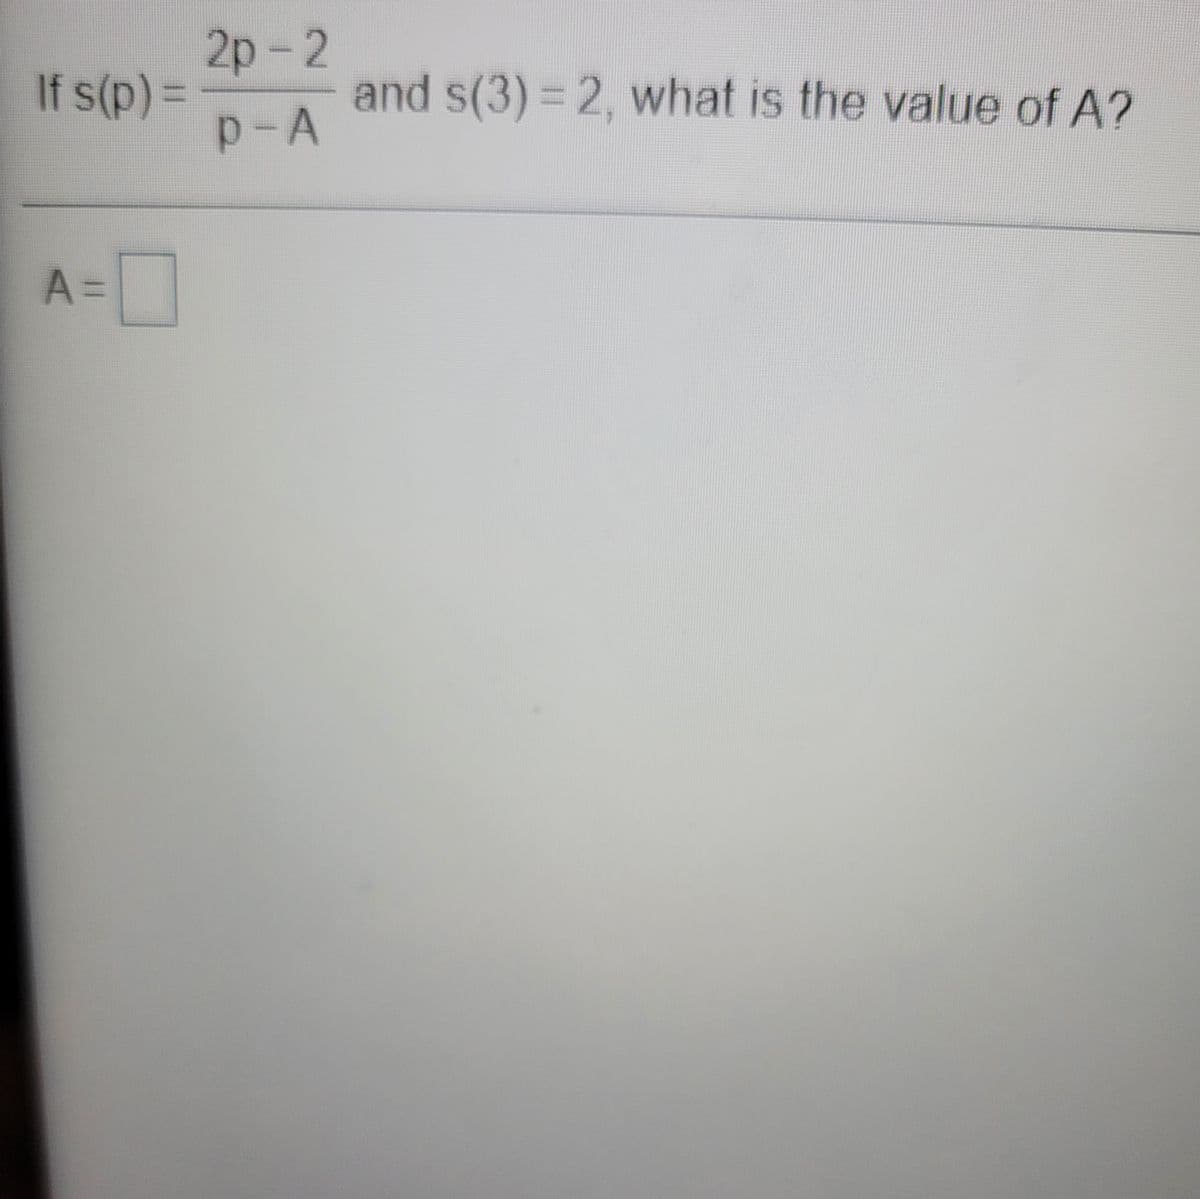 2p-2
and s(3) = 2, what is the value of A?
p-A
If s(p) =
%3D
A =
